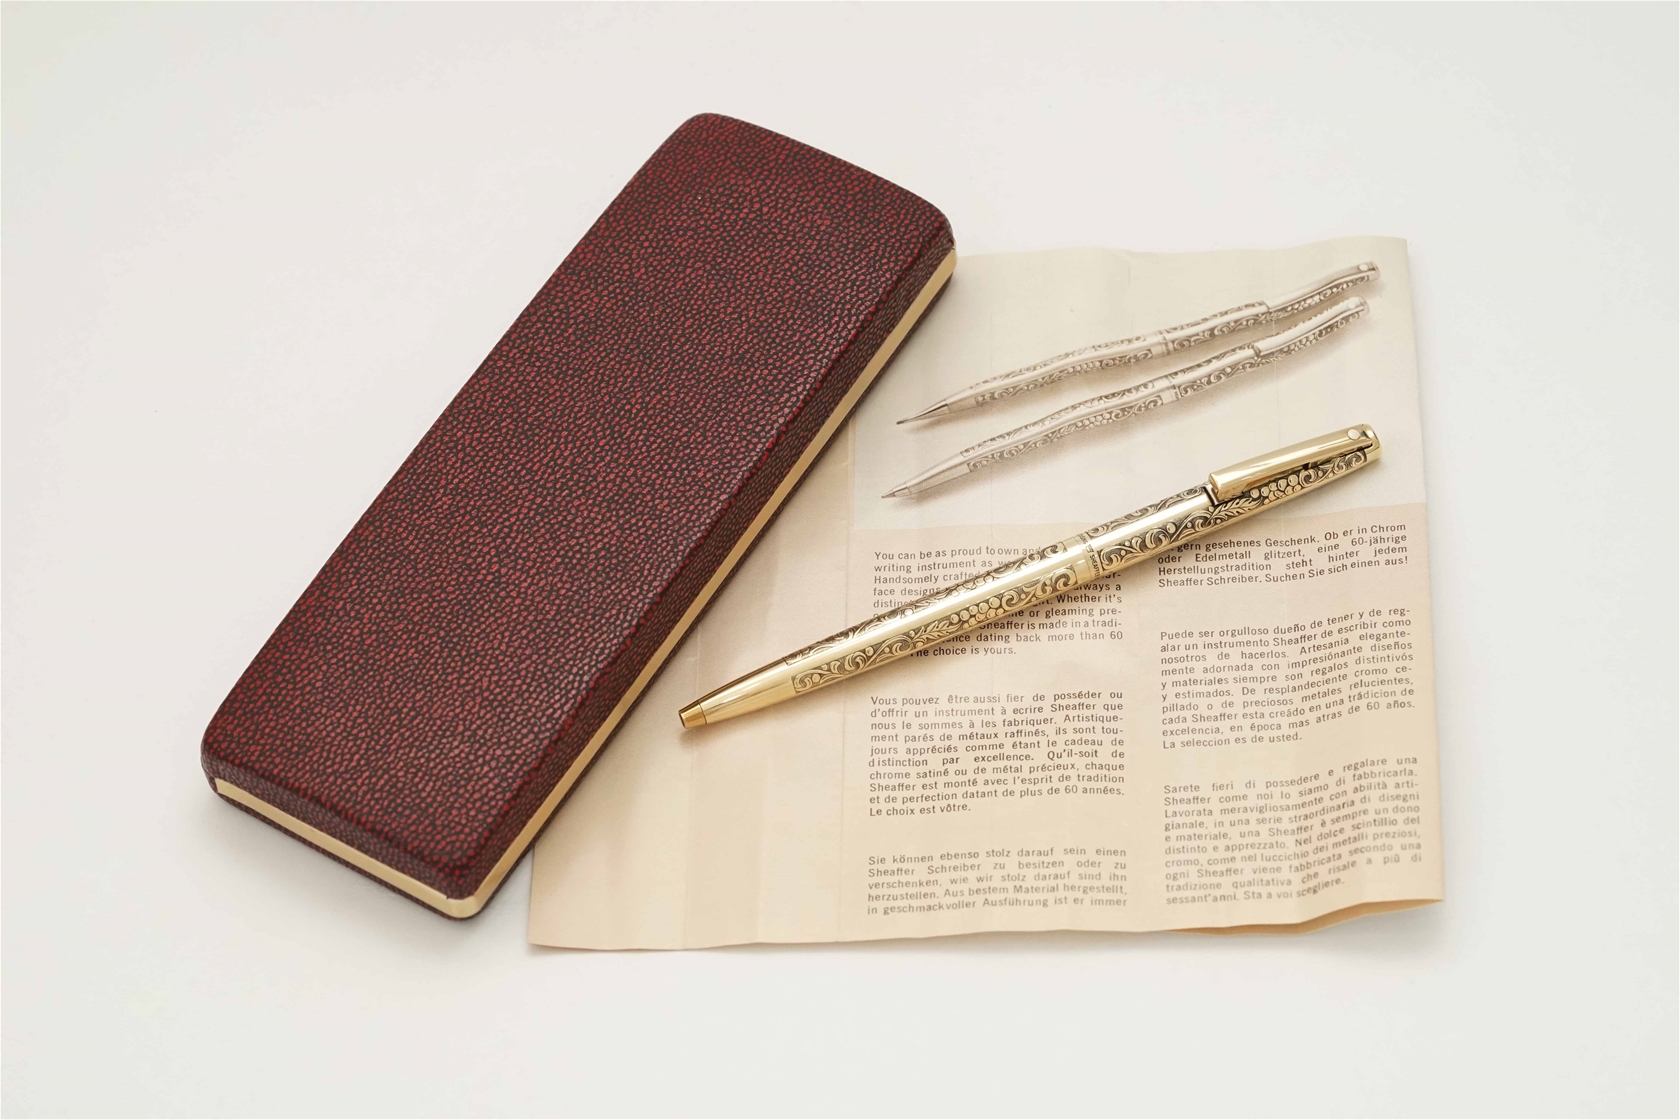 Bút bi Sheaffer Imperial Grapes & Leaves 12K Rolled Gold Plated Ballpoint Pen